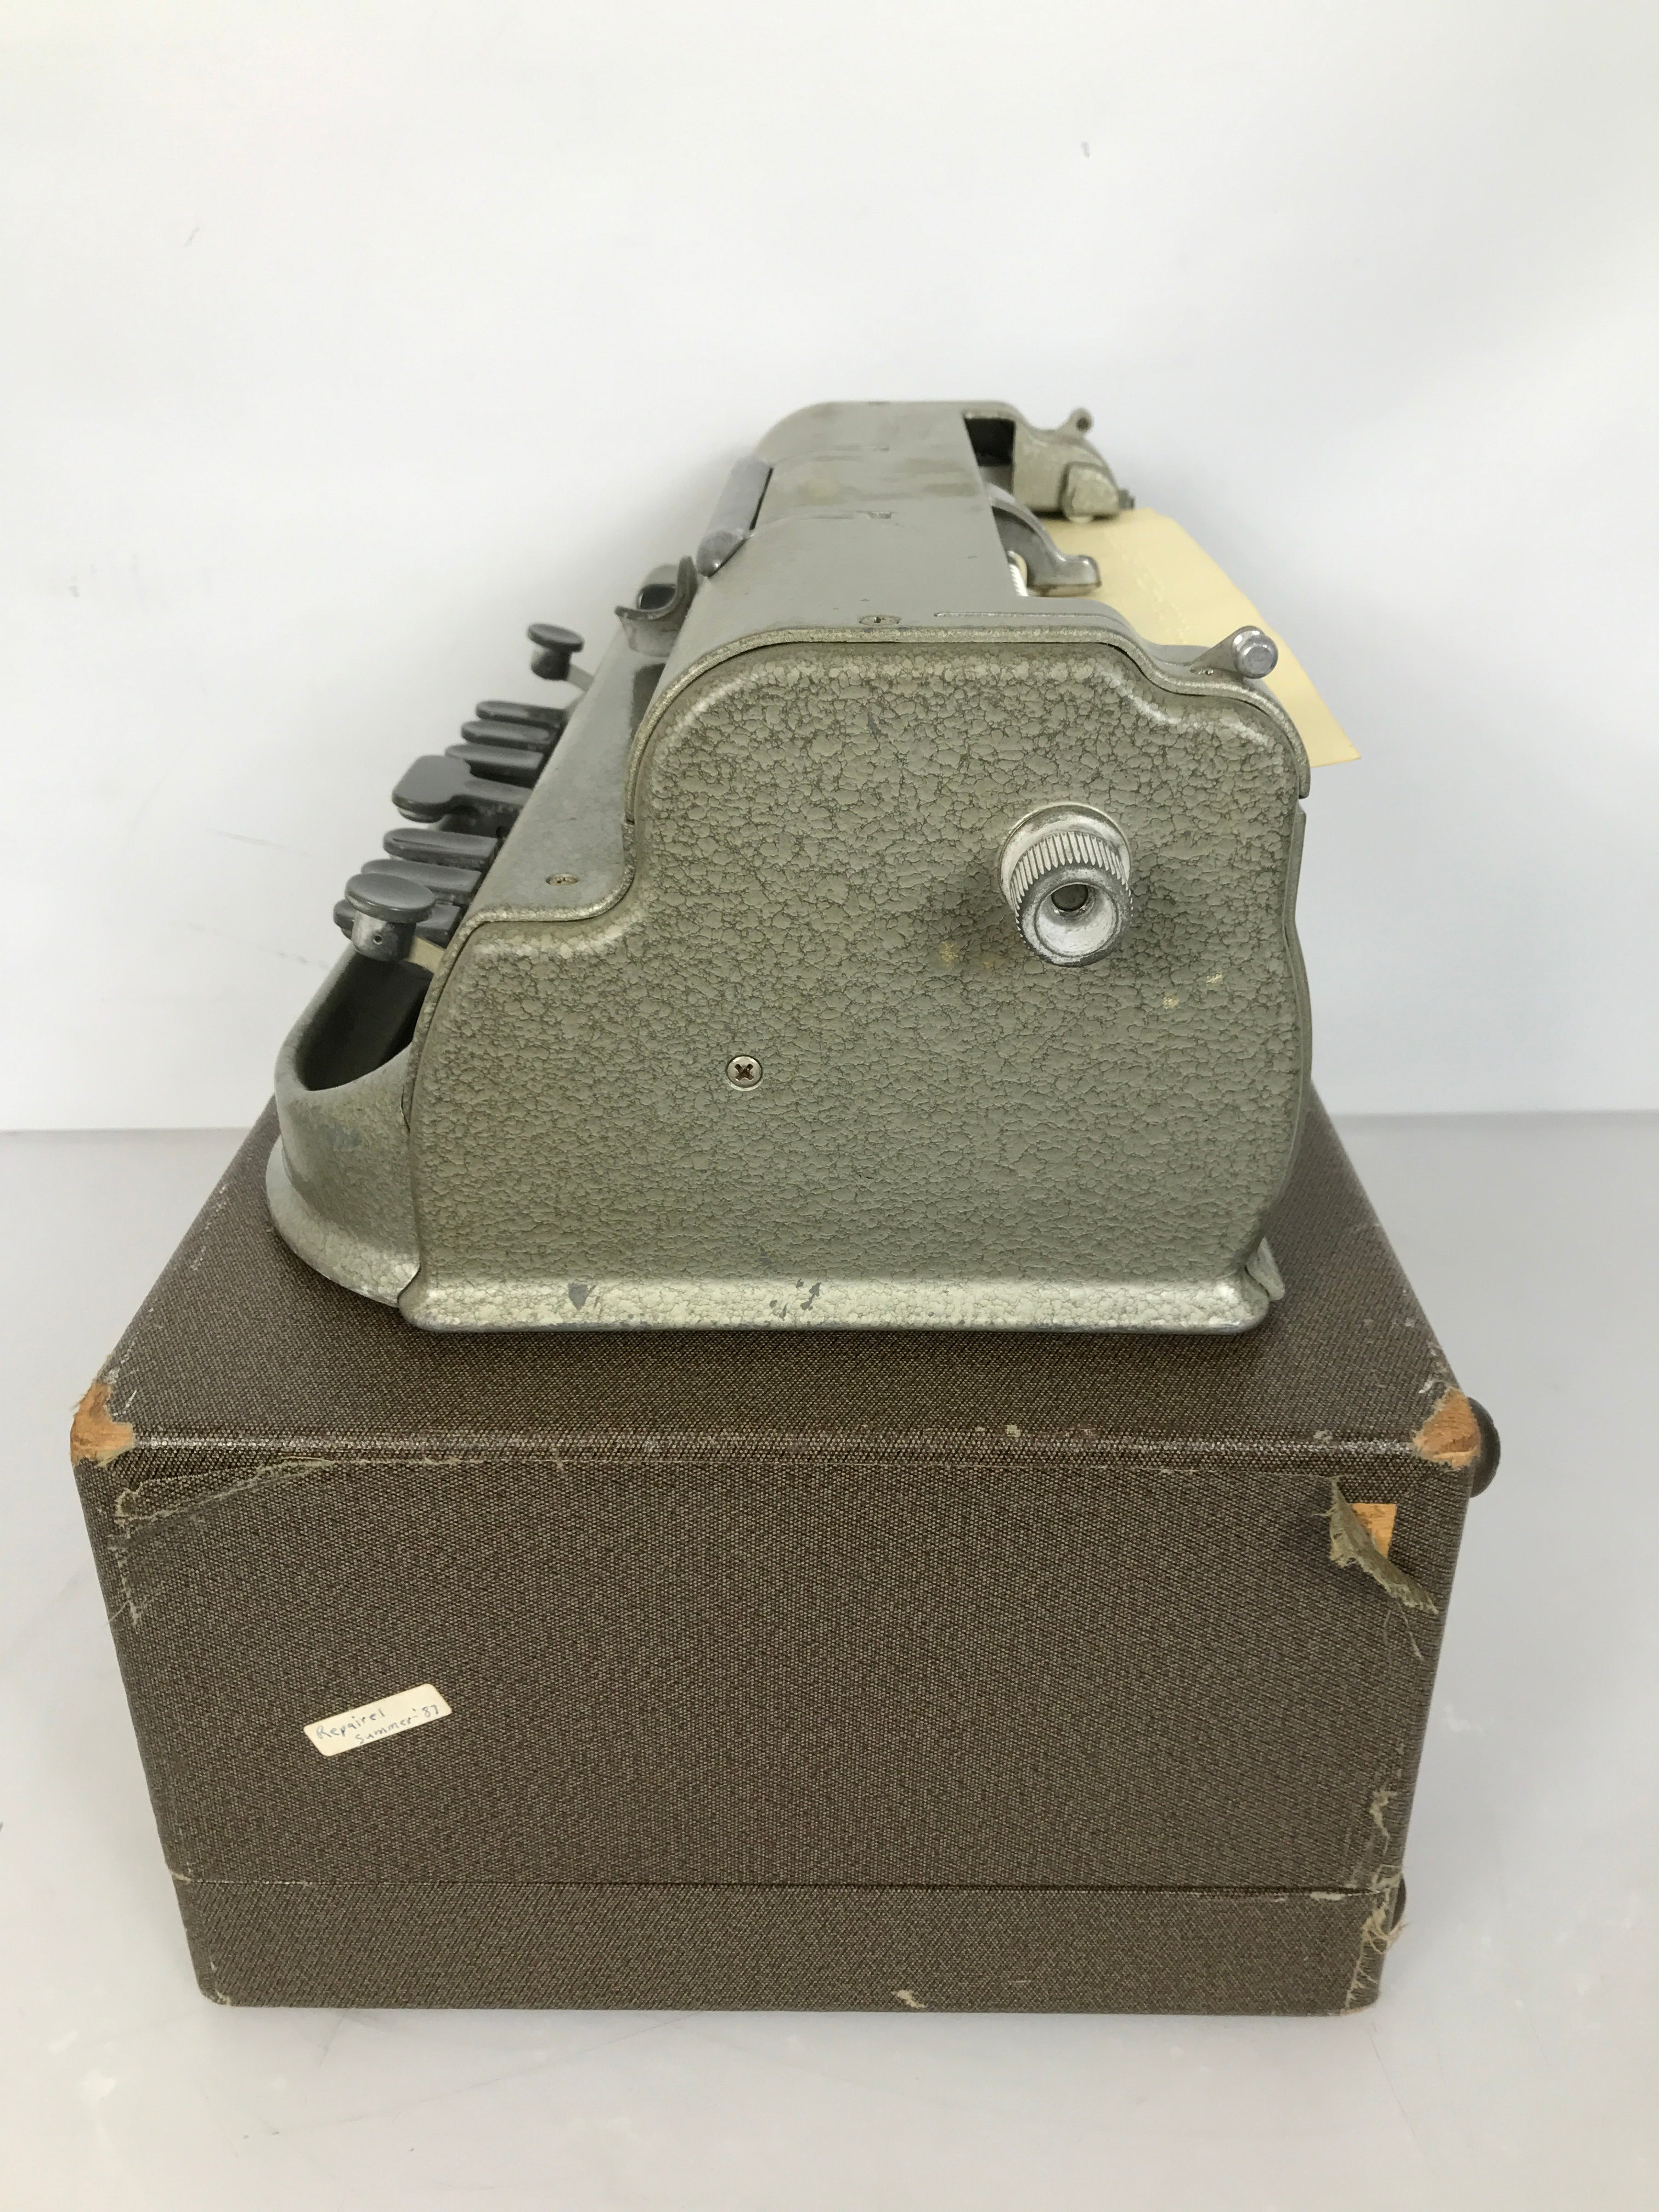 Vintage Perkins Brailler Machine Typewriter with Original Case Hammertone